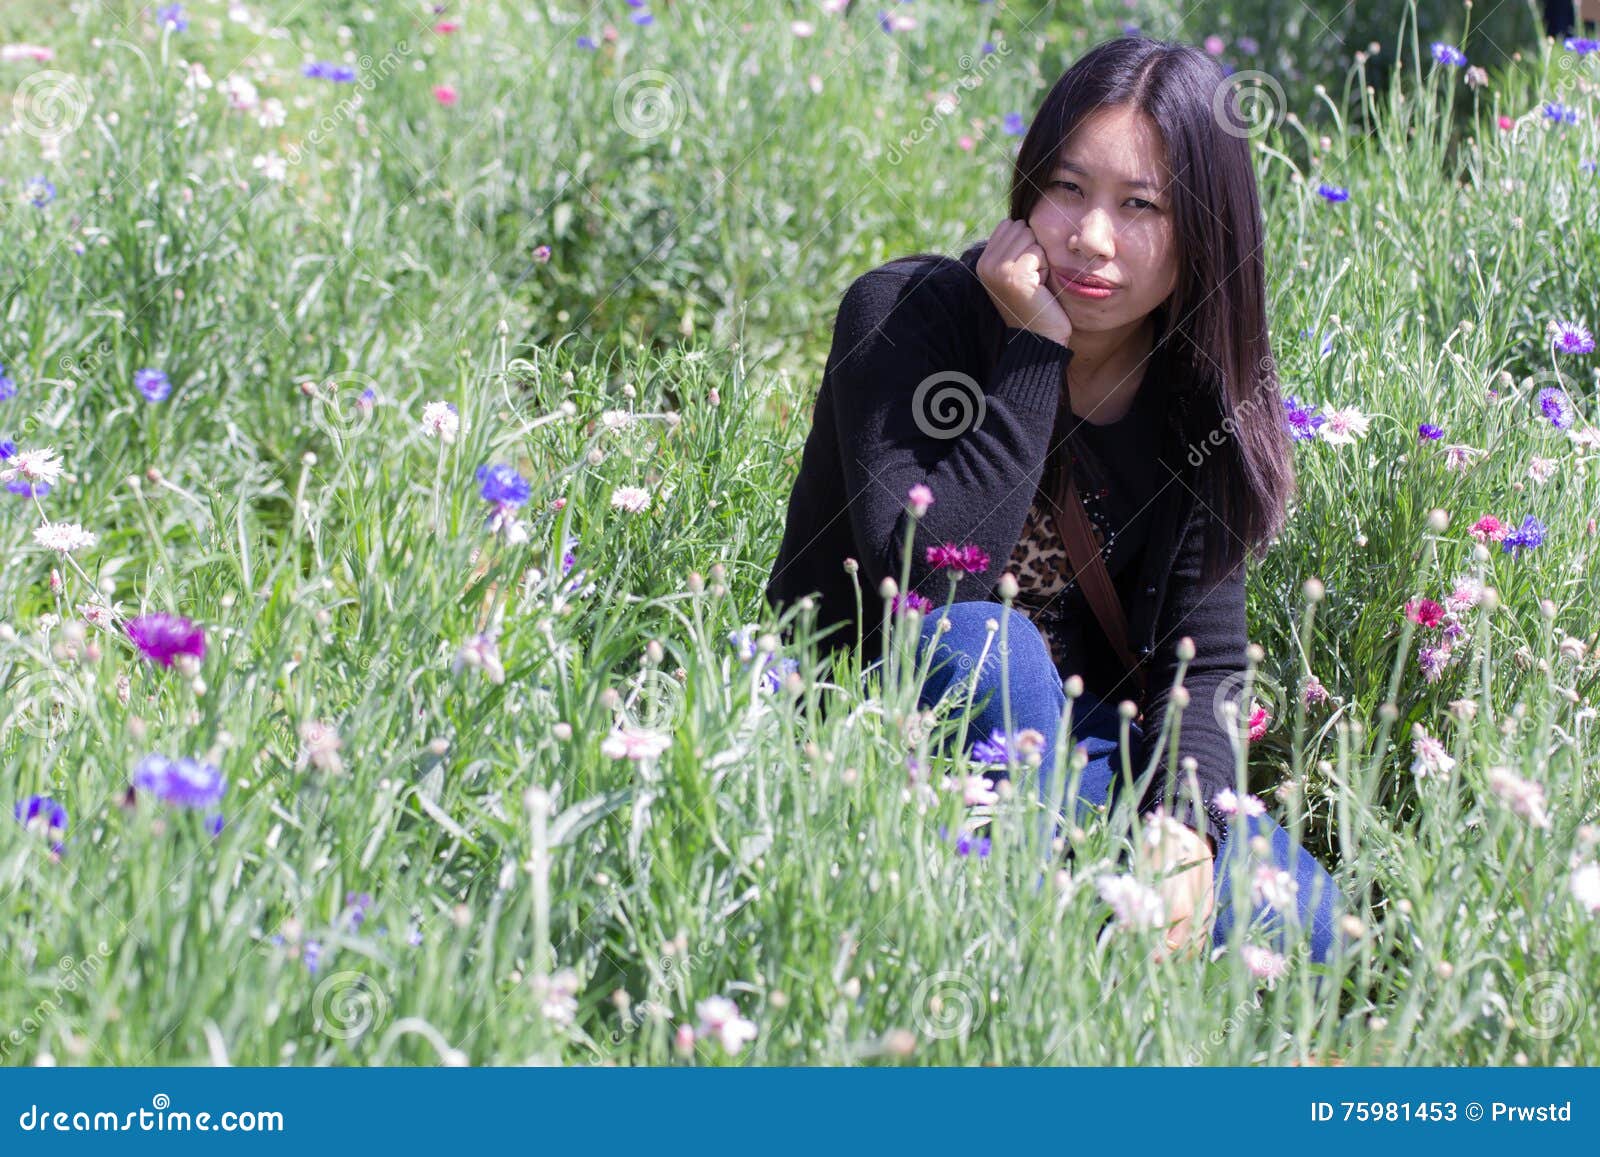 portarit thai woman with purple flower garden